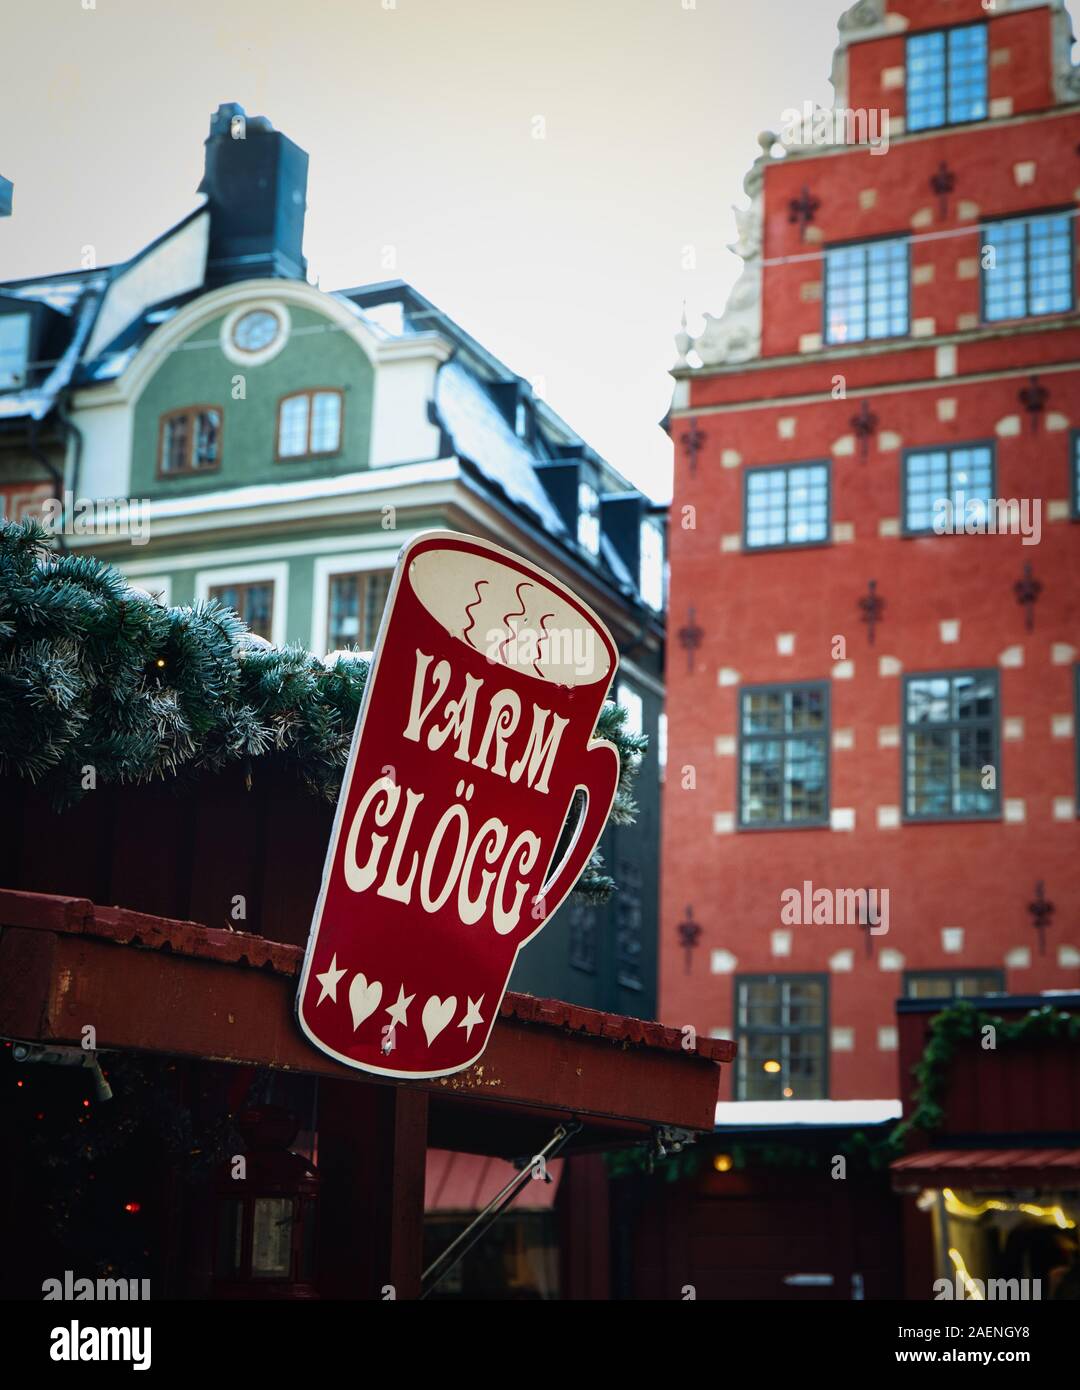 Vin chaud (Varm Glögg) signe en Marché de Noël, Stortorget, Gamla Stan (la vieille ville de Stockholm), Stockholm, Suède, Scandinavie Banque D'Images